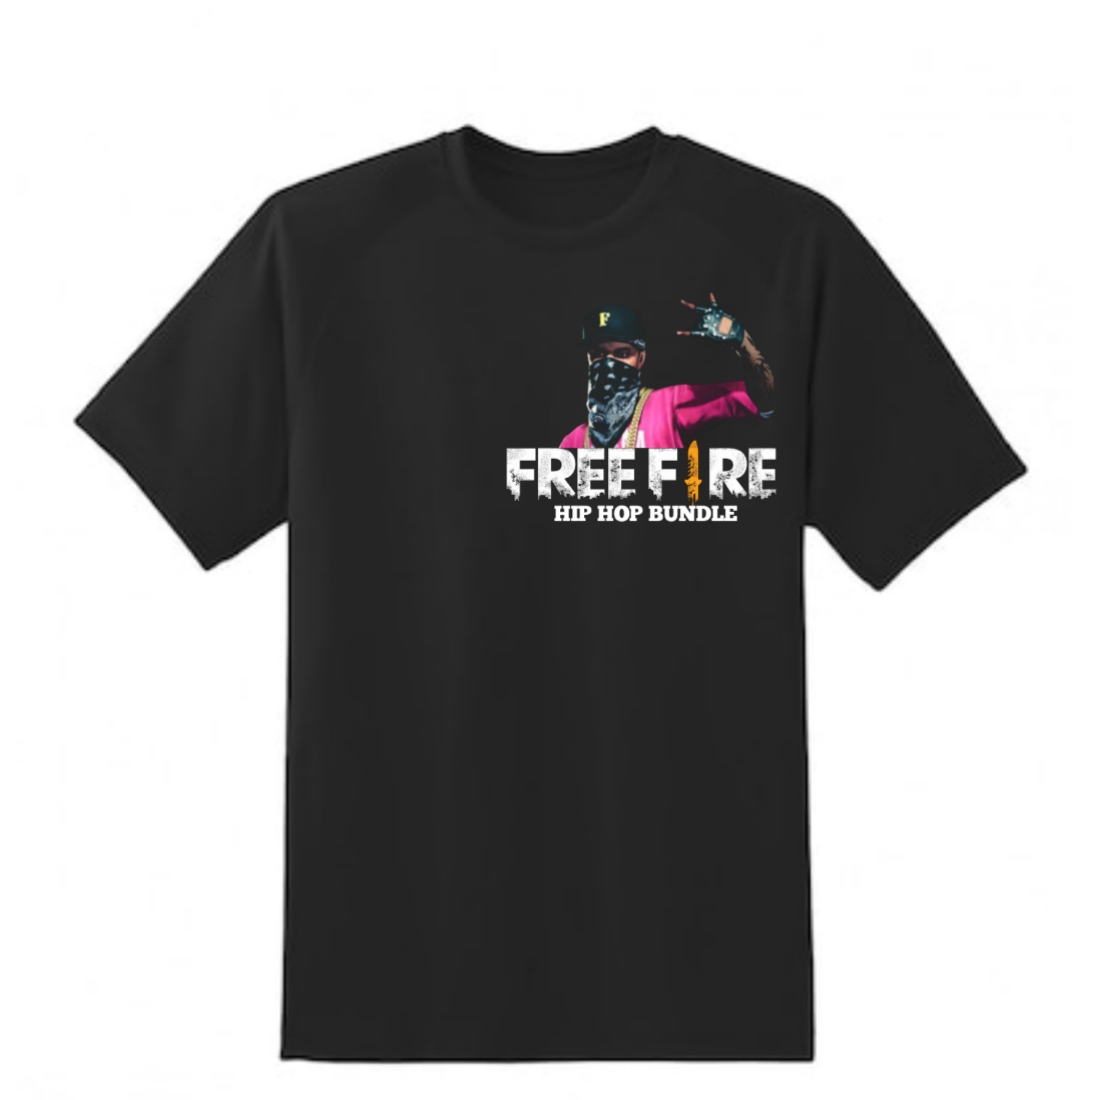 Free fire hip hop bundle T-shirt design cover image.